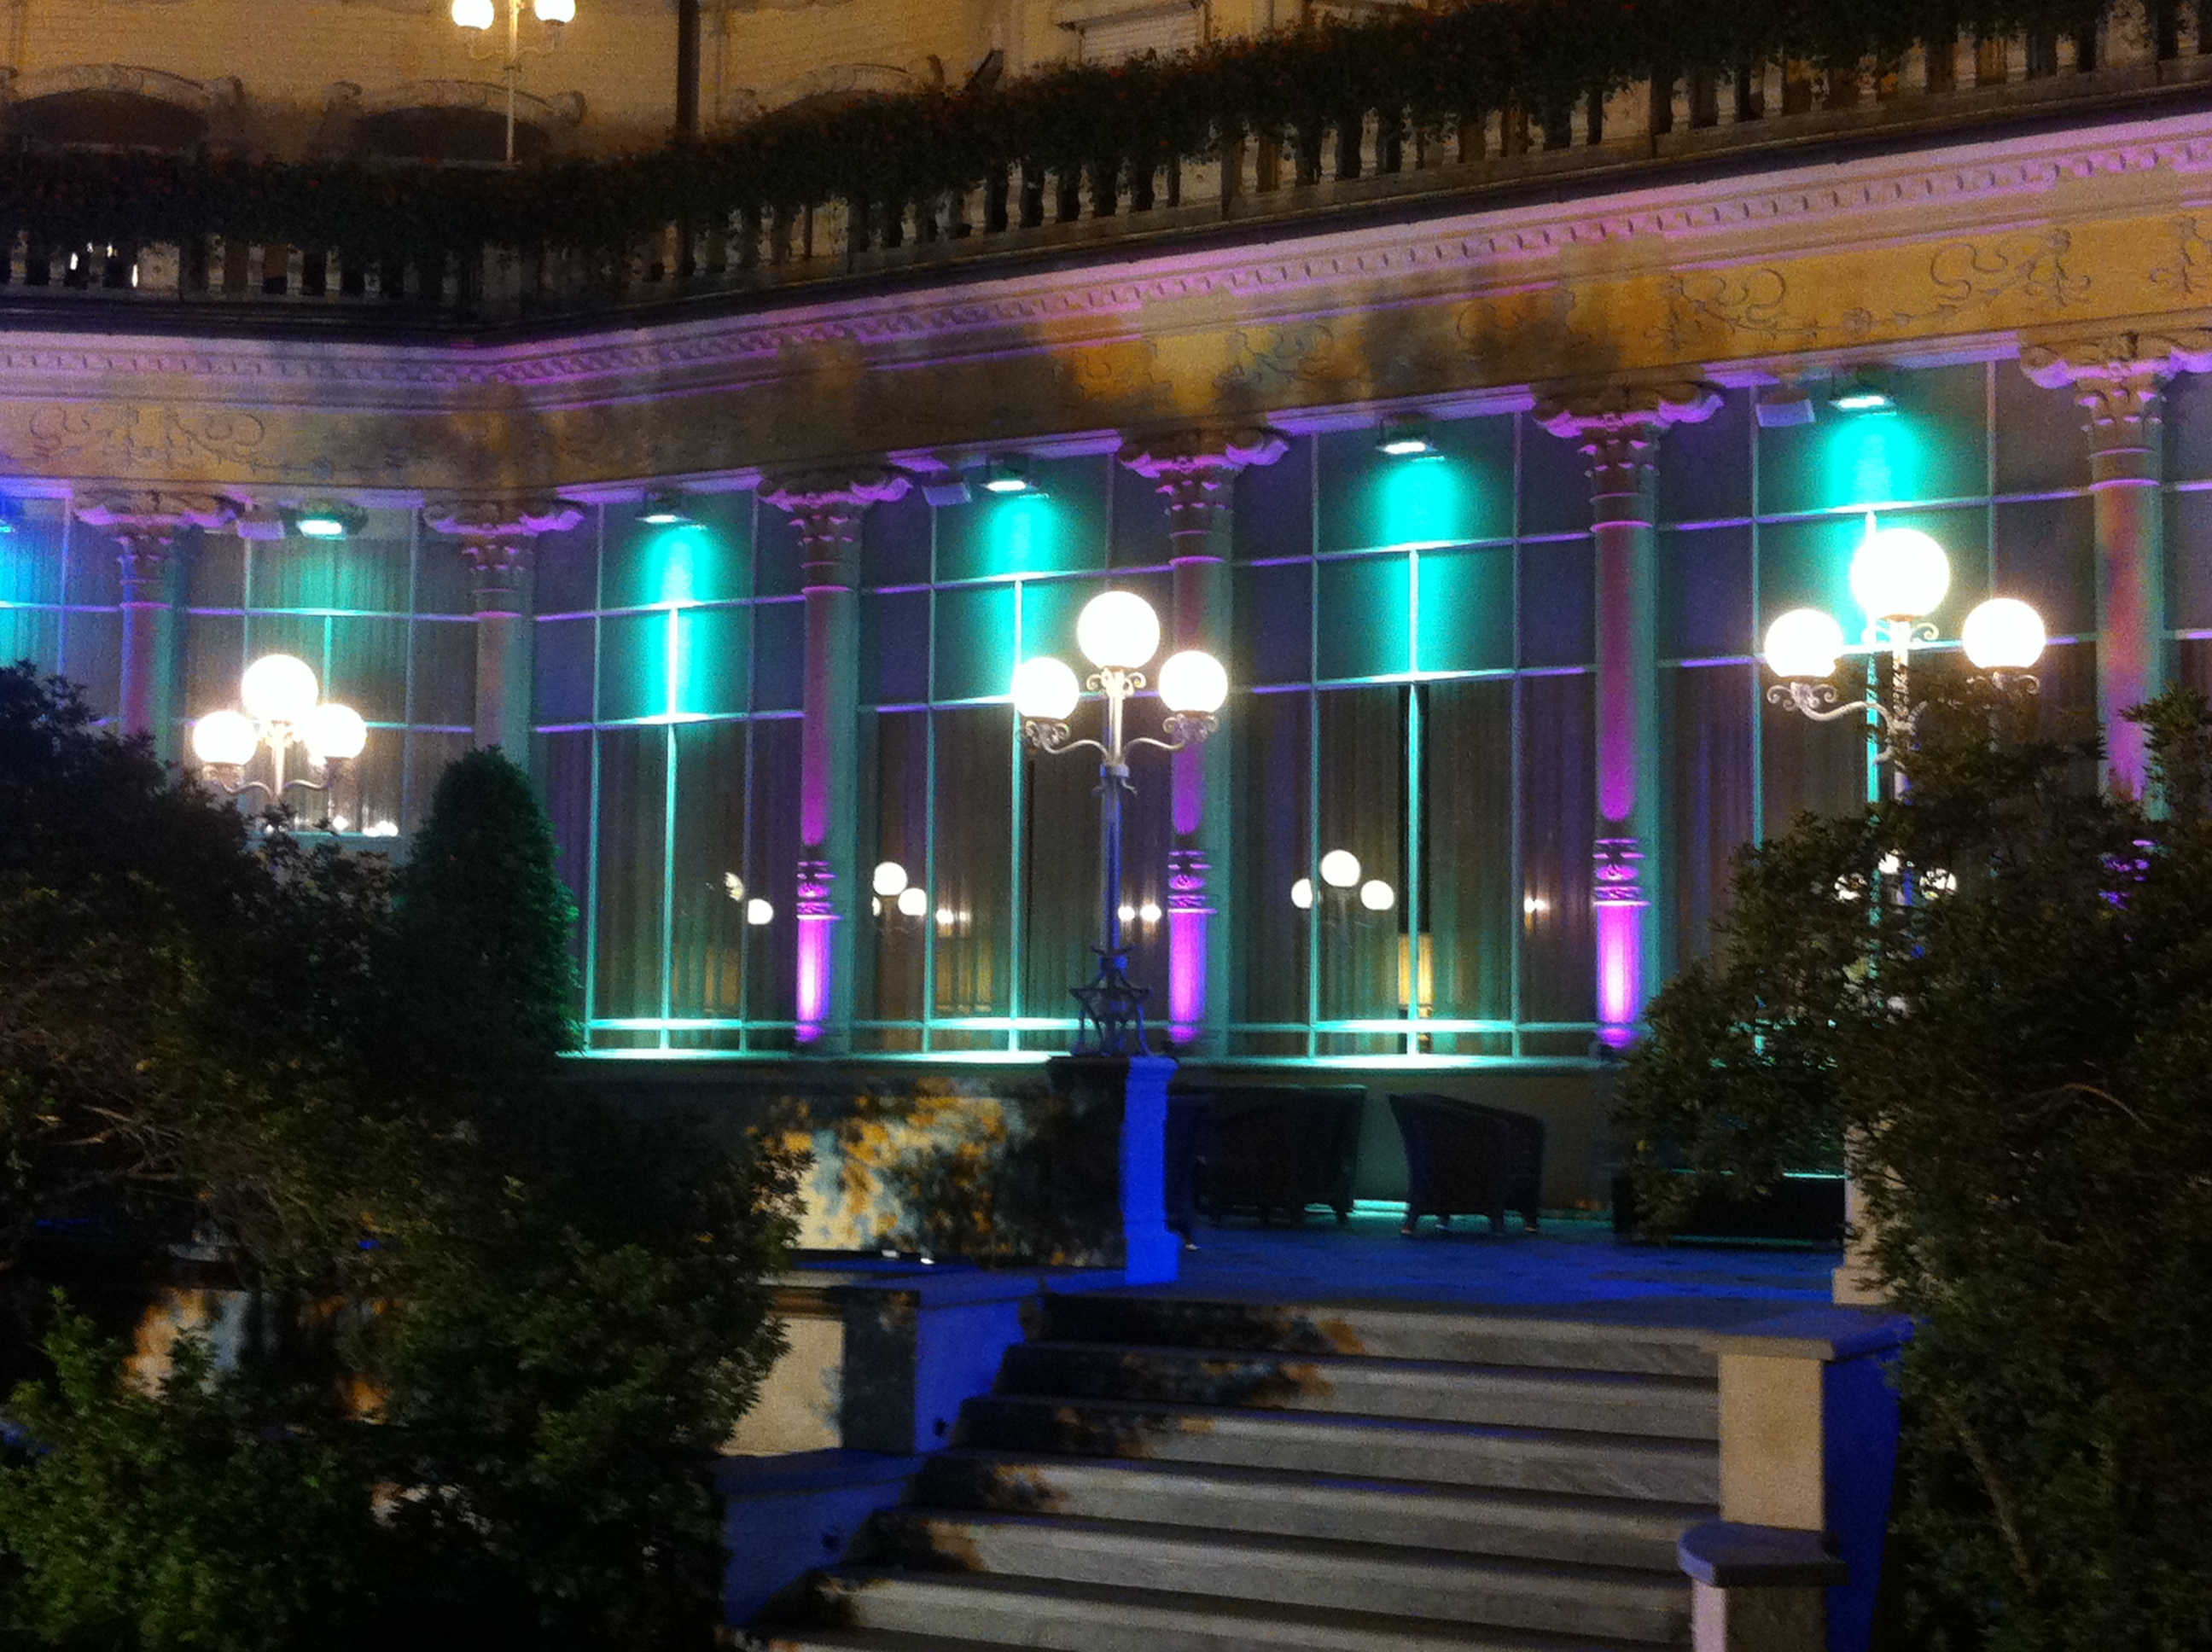 Nuove luci architetturali all'Hotel regina Palace di Stresa (VB)